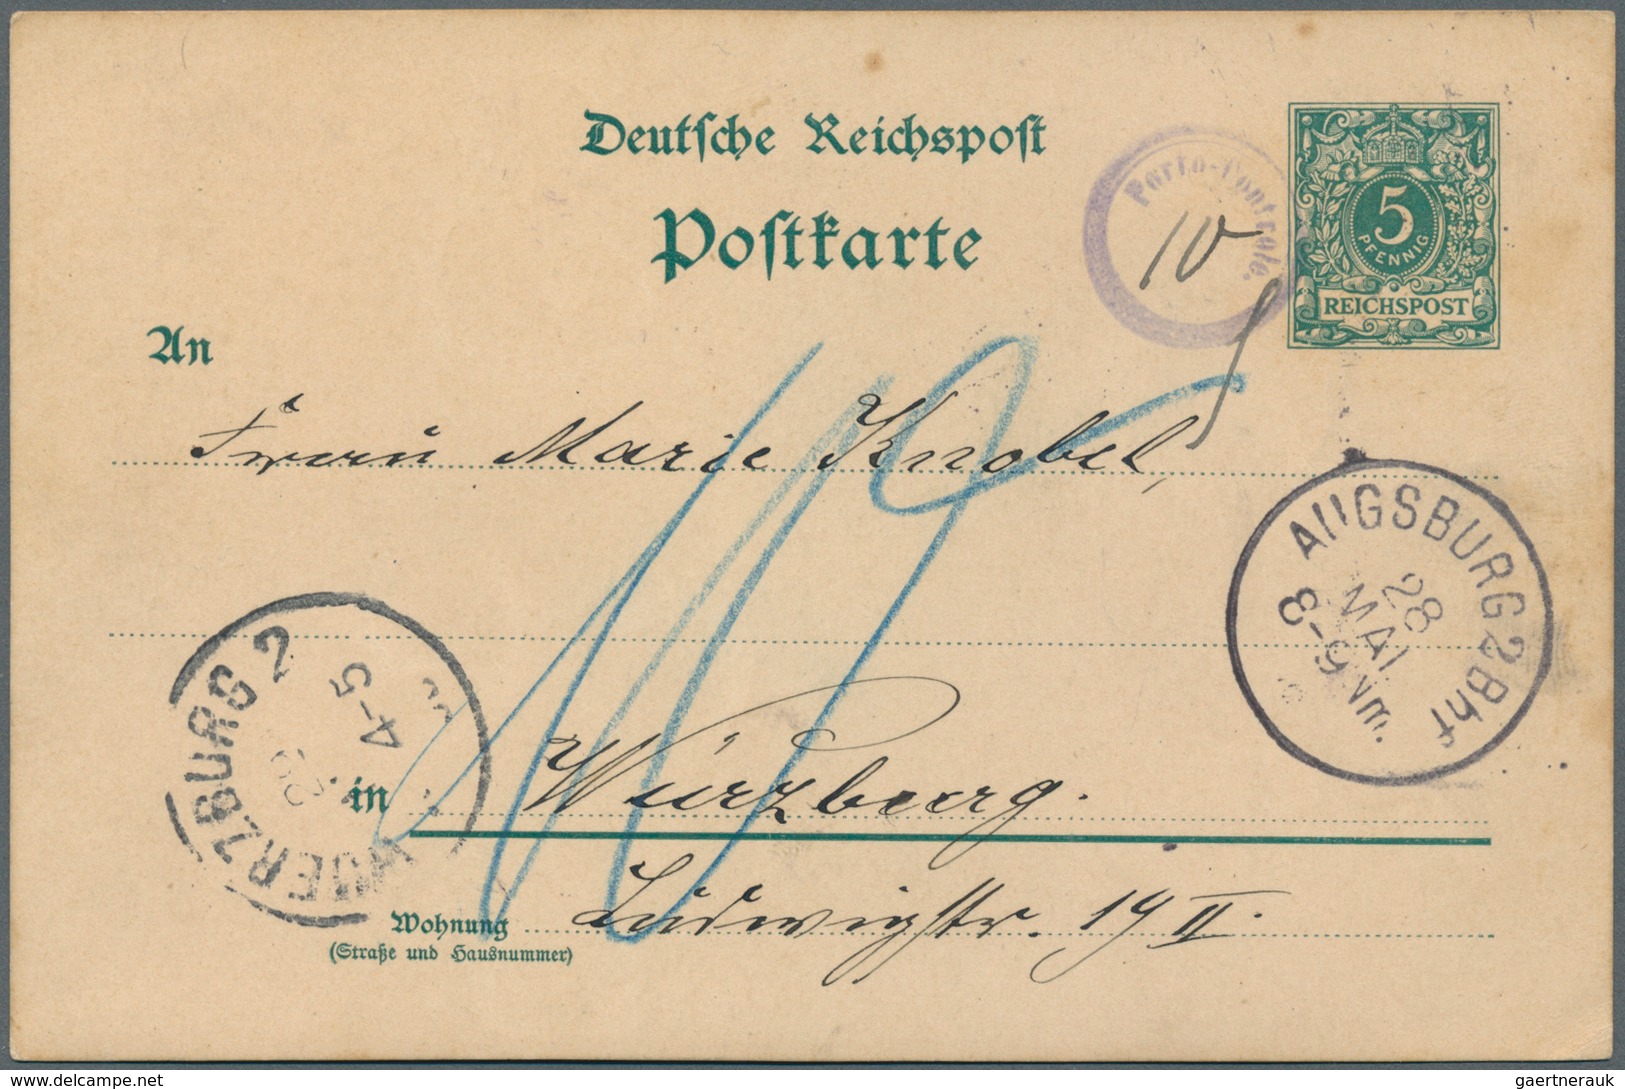 Deutsches Reich: 1891/1922, NACHPORTO-BELEGE, vielseitige Sammlung von 28 unzureichend frankierten B